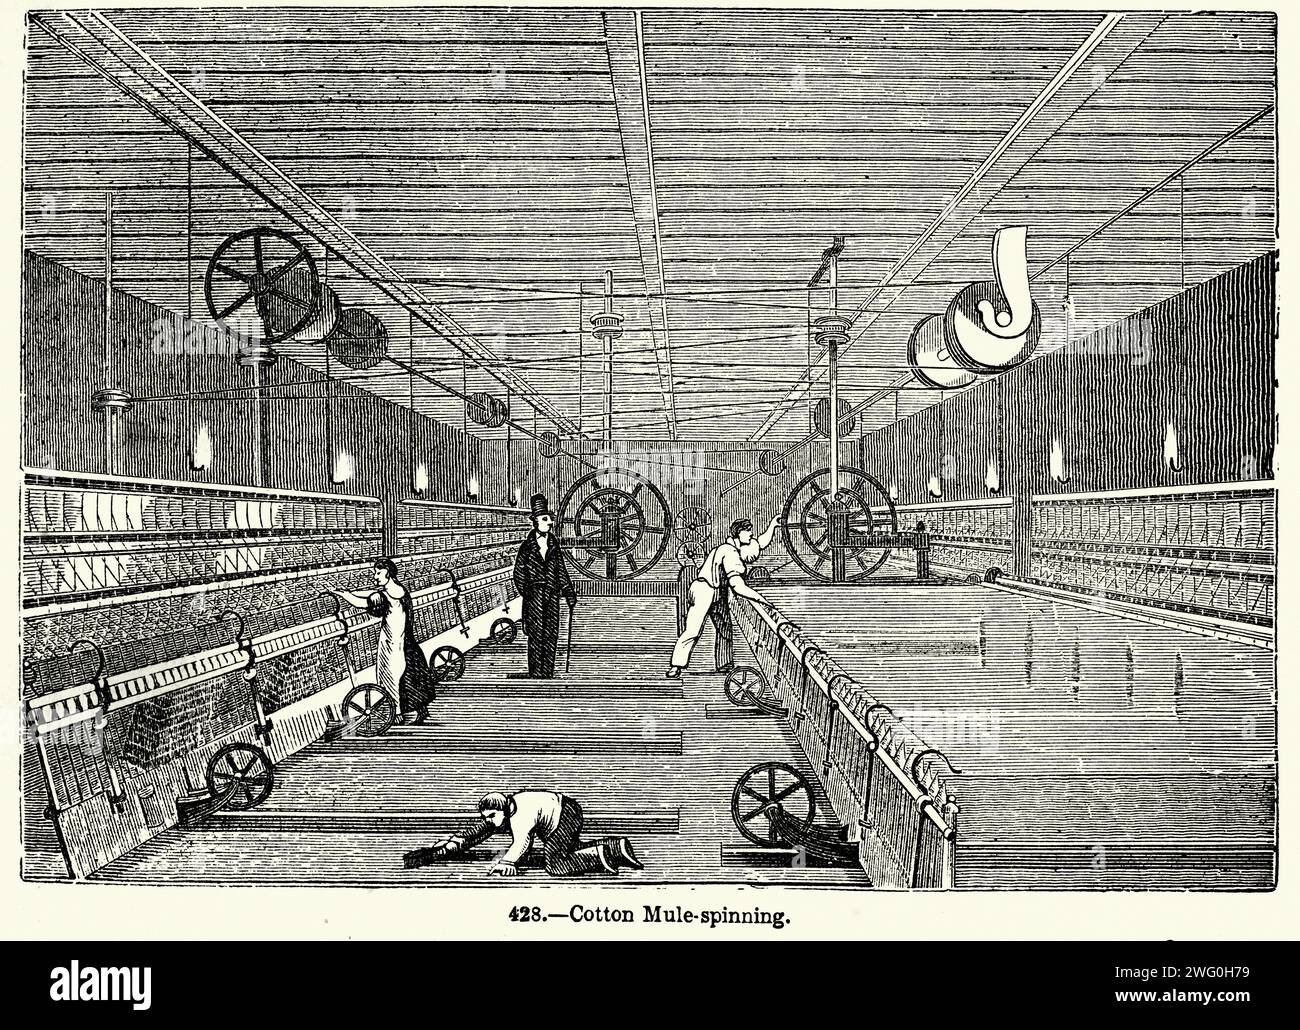 Illustration vintage, personnes travaillant dans une usine de coton, Mule Spinning, Histoire de l'industrie textile, révolution industrielle, 19e siècle victorien, années 1850 Banque D'Images